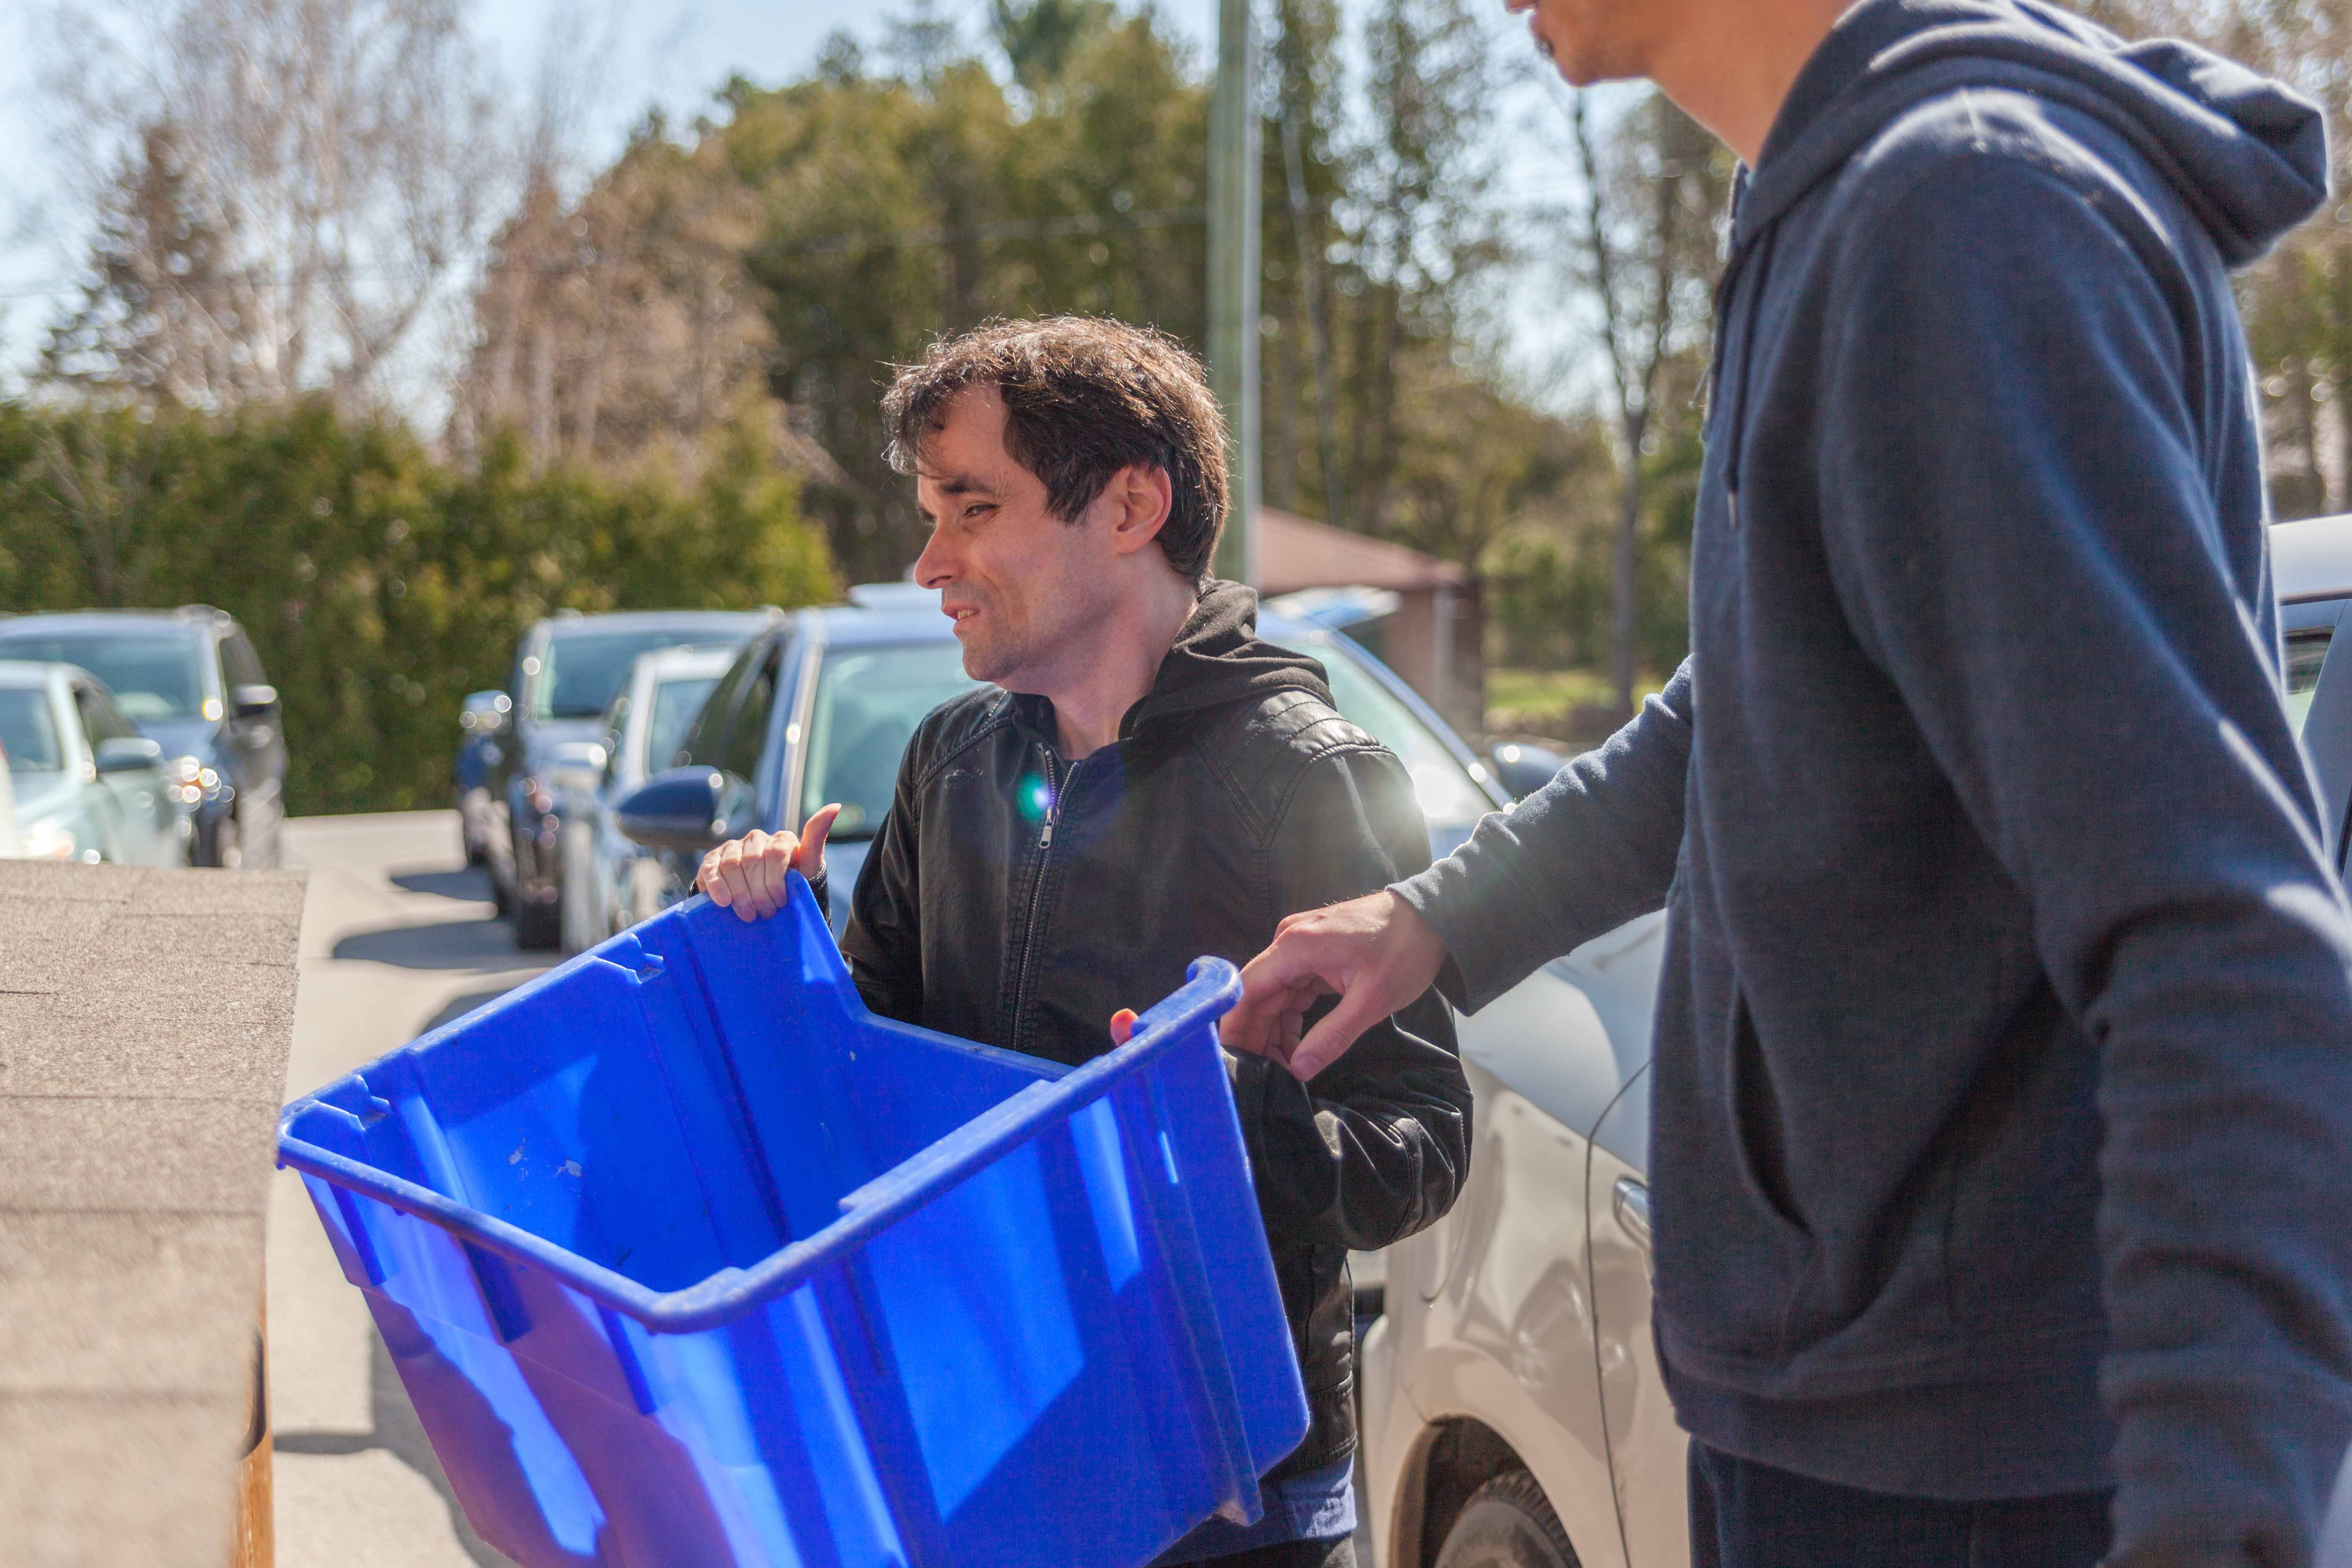 Un homme atteint de surdicécité sort le recyclage avec l’aide de son interprète tactile. Chaque personne tient un bout du bac bleu.